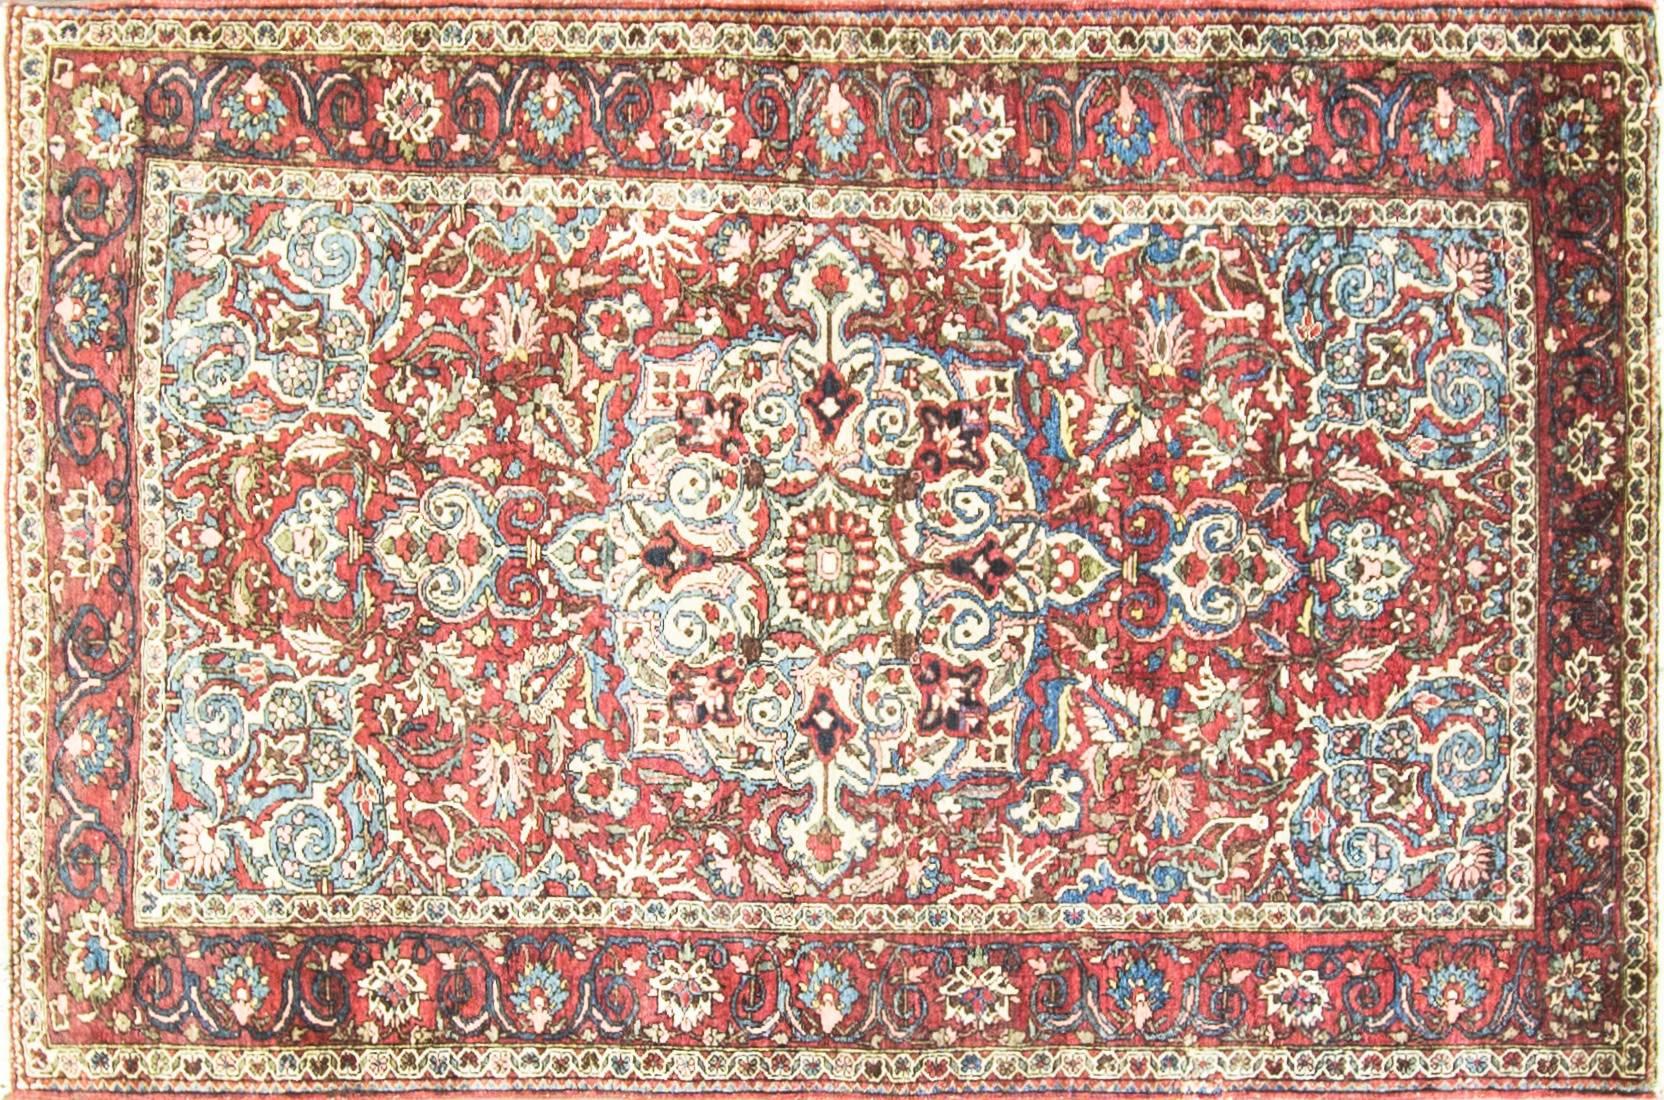 La tribu des Bakhtiari, basée à Chahar Mahaal et Bakhtiari, est réputée pour ses tapis et ses tissages. Ils tissent des tapis exportés dans le monde entier depuis le début du XIXe siècle.